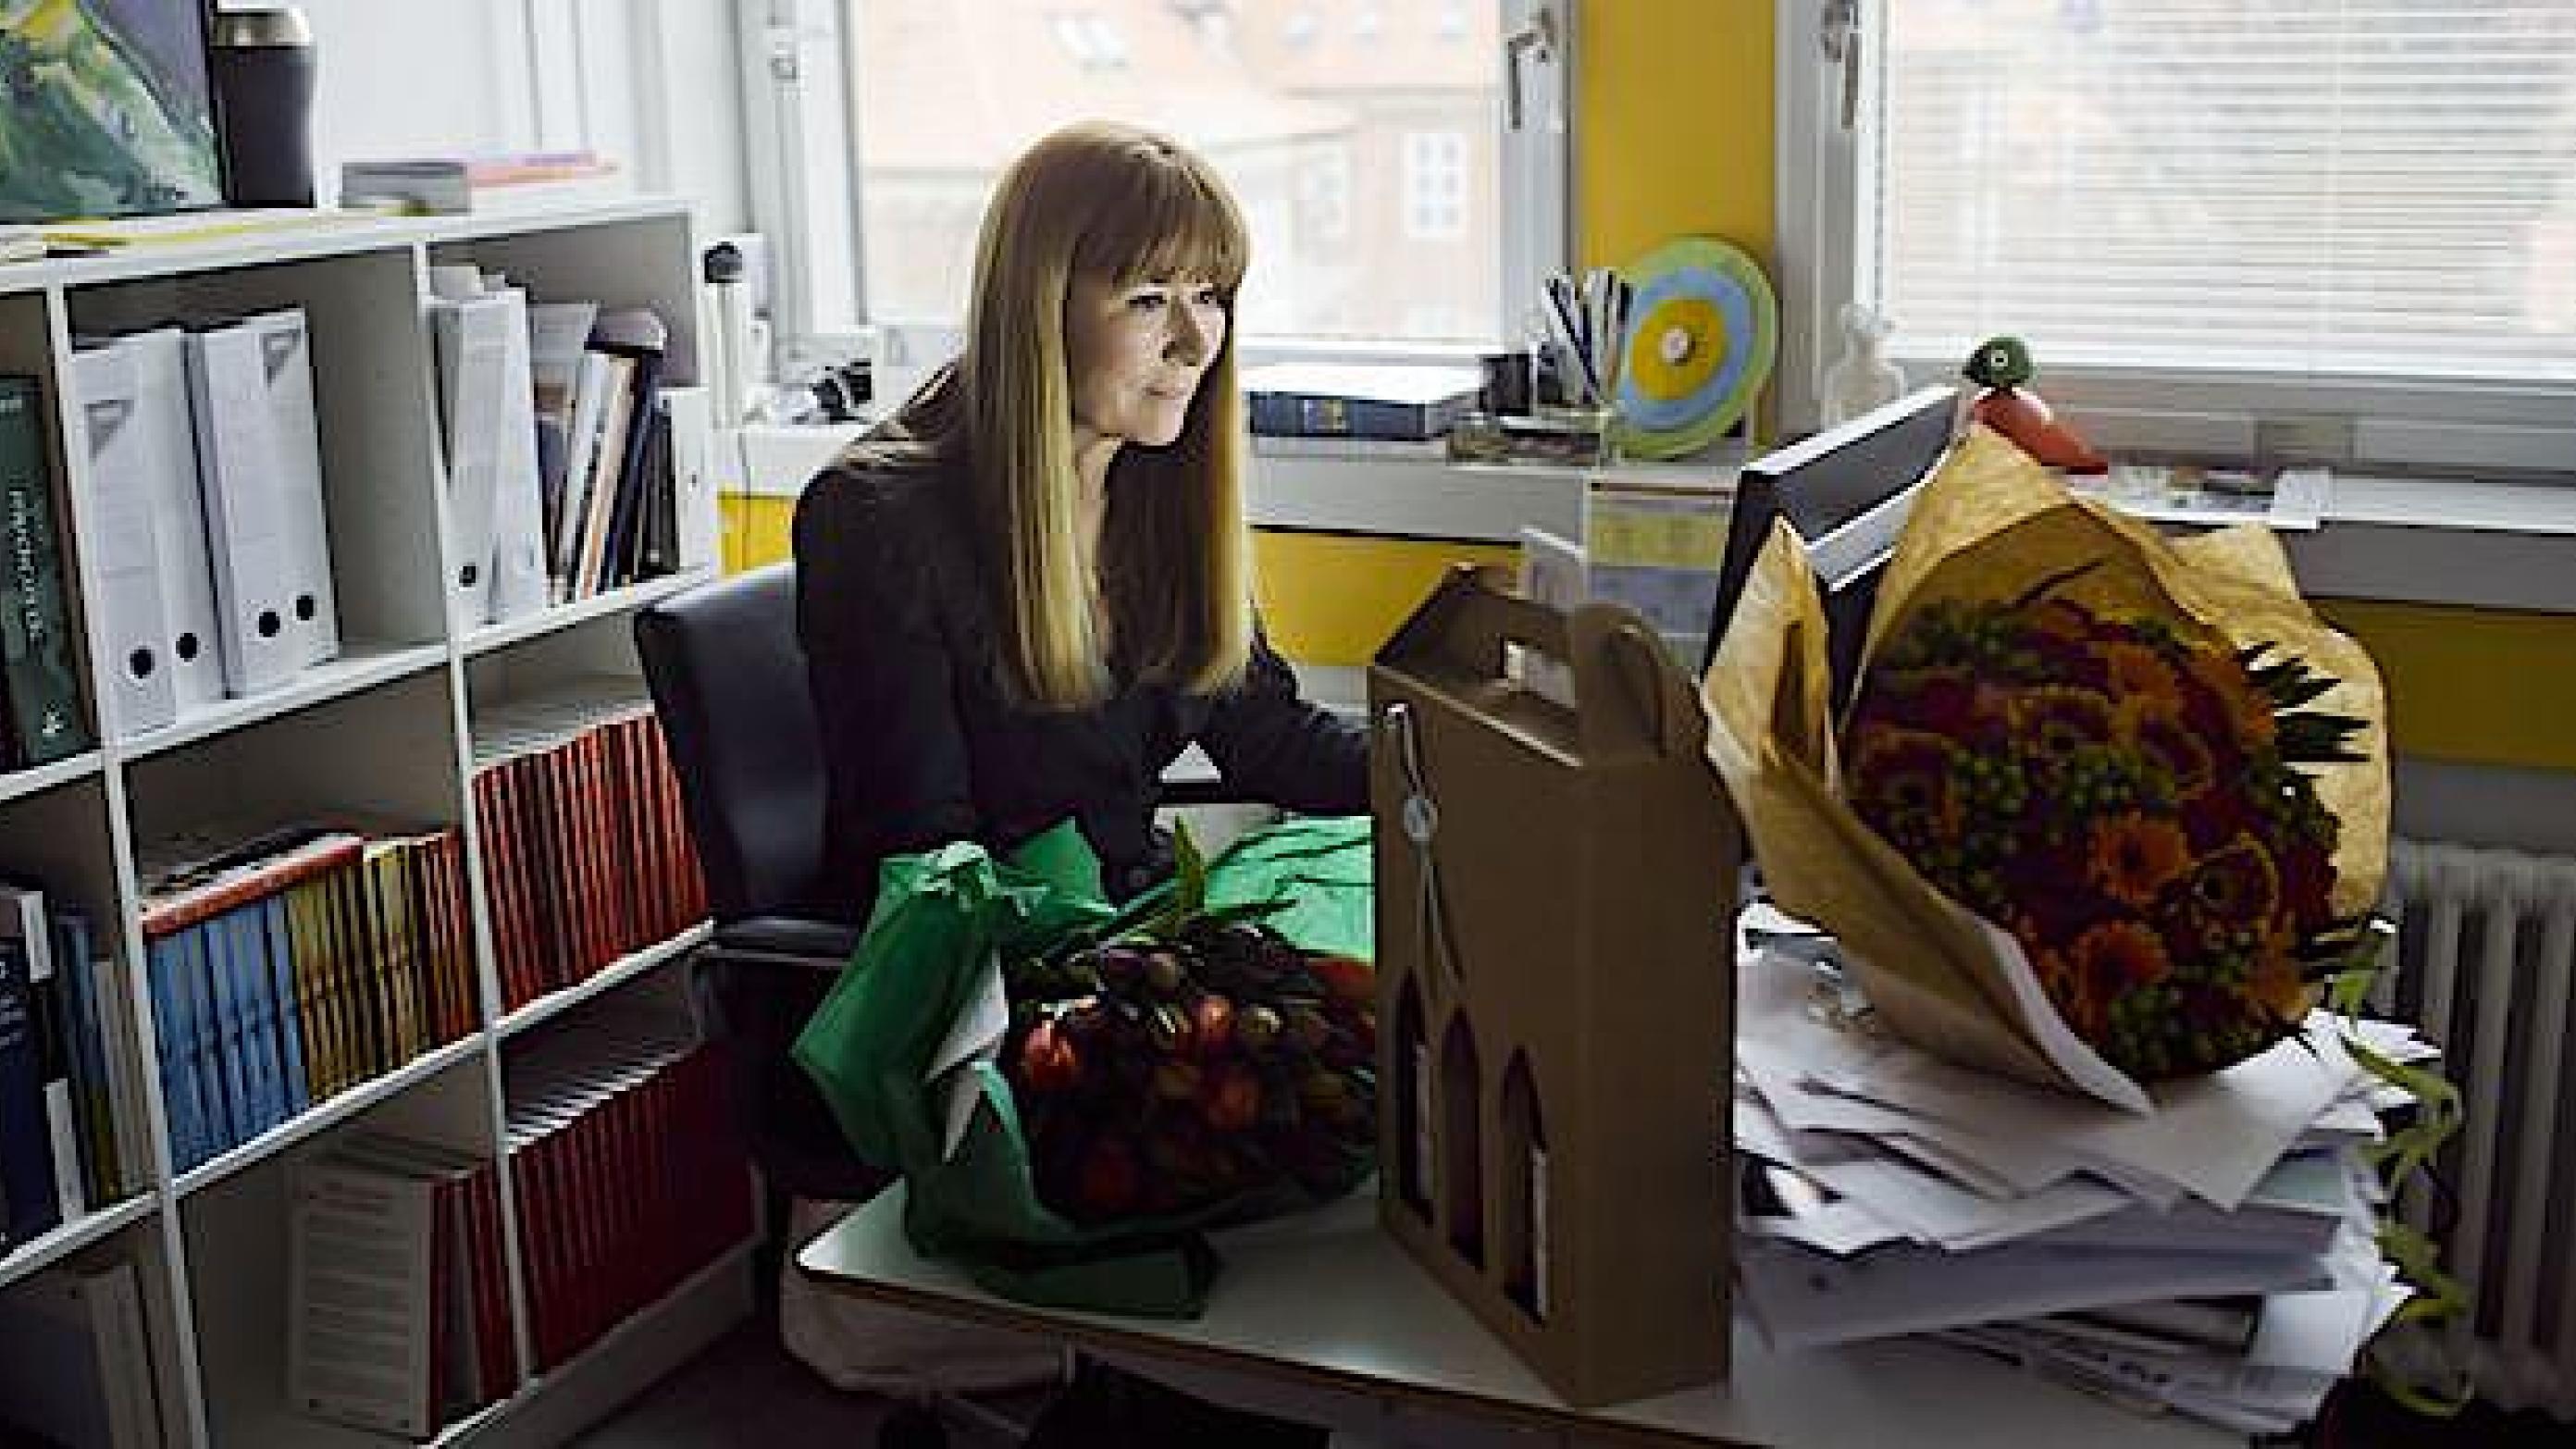 Bente Klarlunds skrivebord flyder over med vin og blomster - alt sammen lykønskninger i forbindelse med hendes sejr over UVVU ved Østre Landsret. Foto: Claus Boesen.